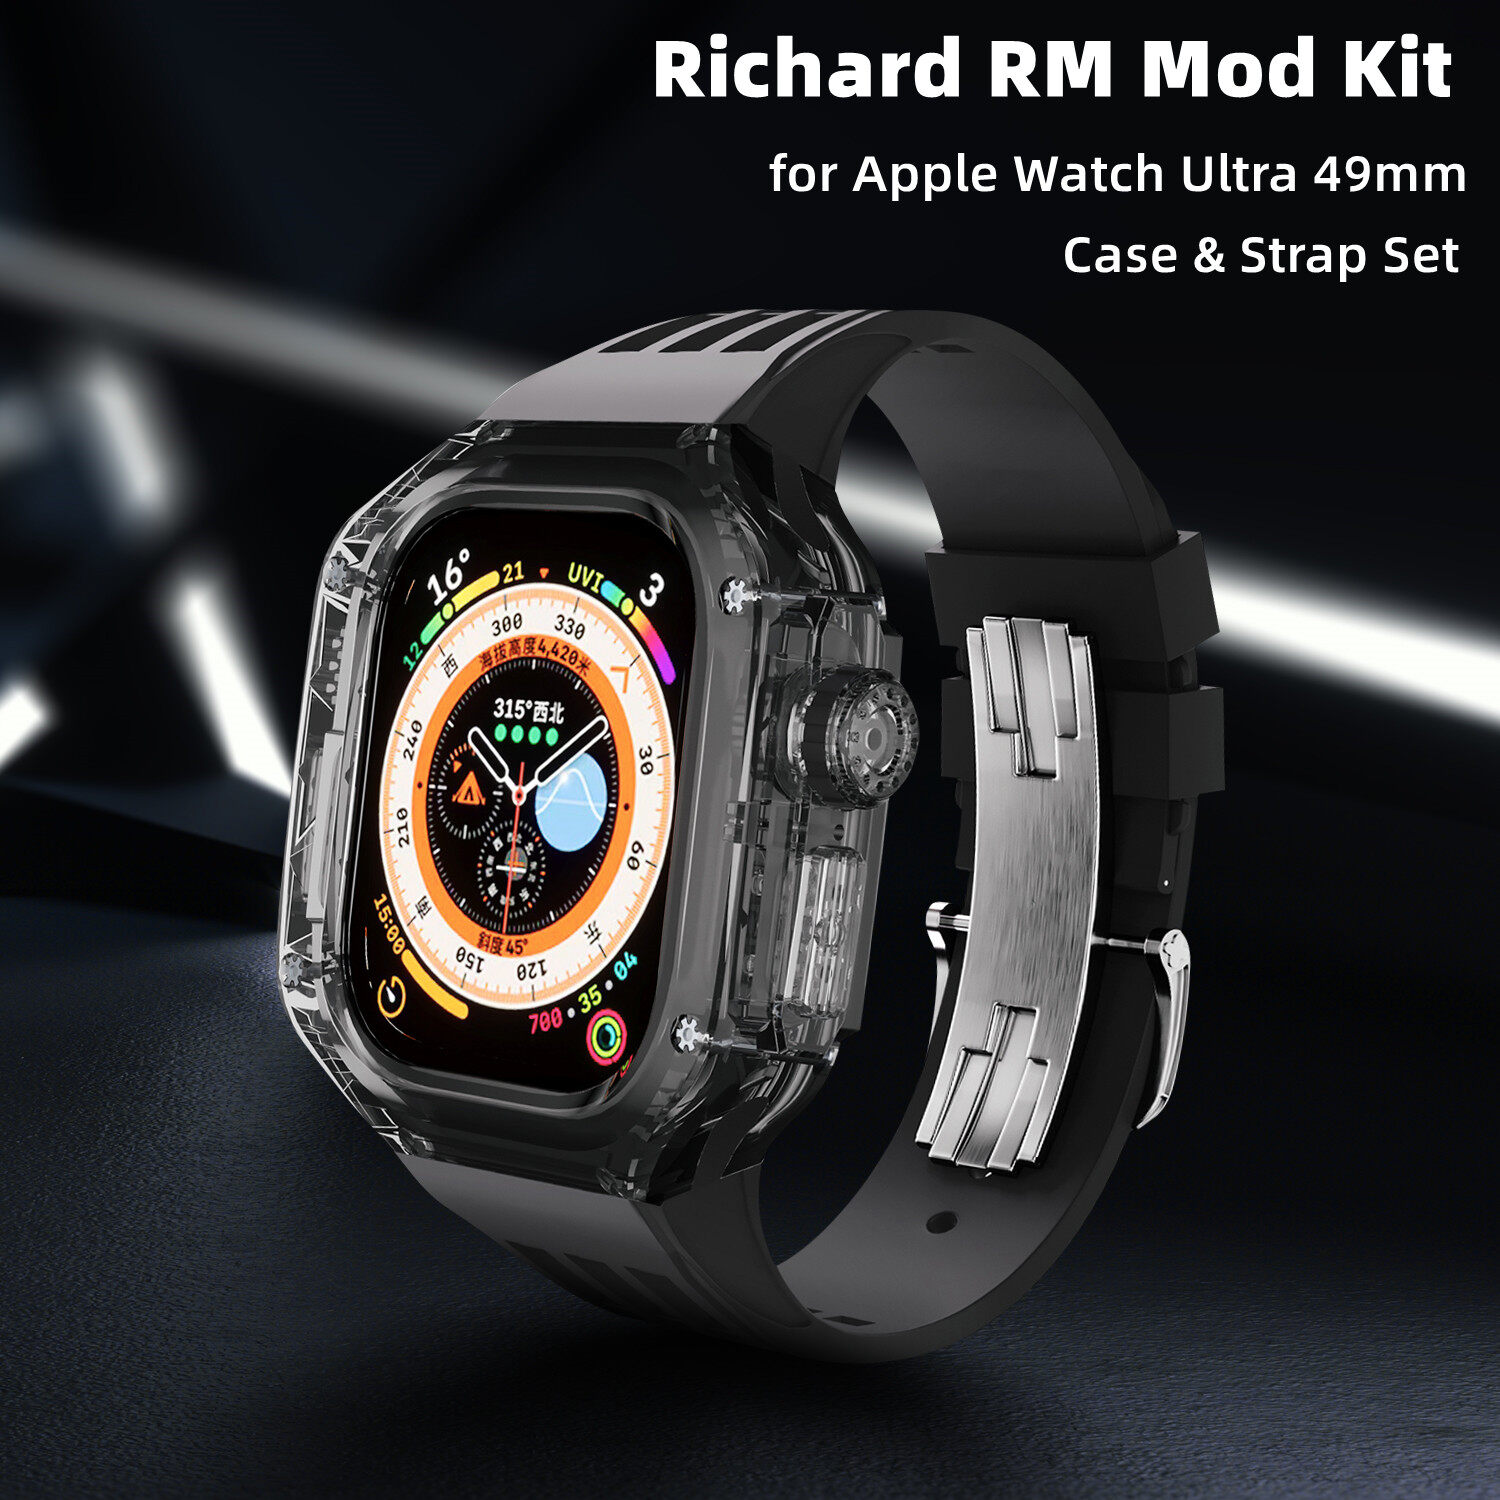 For Apple Watch Ultra 2 Richard RM Mod Kit Luxury Fluororubber Butterfly